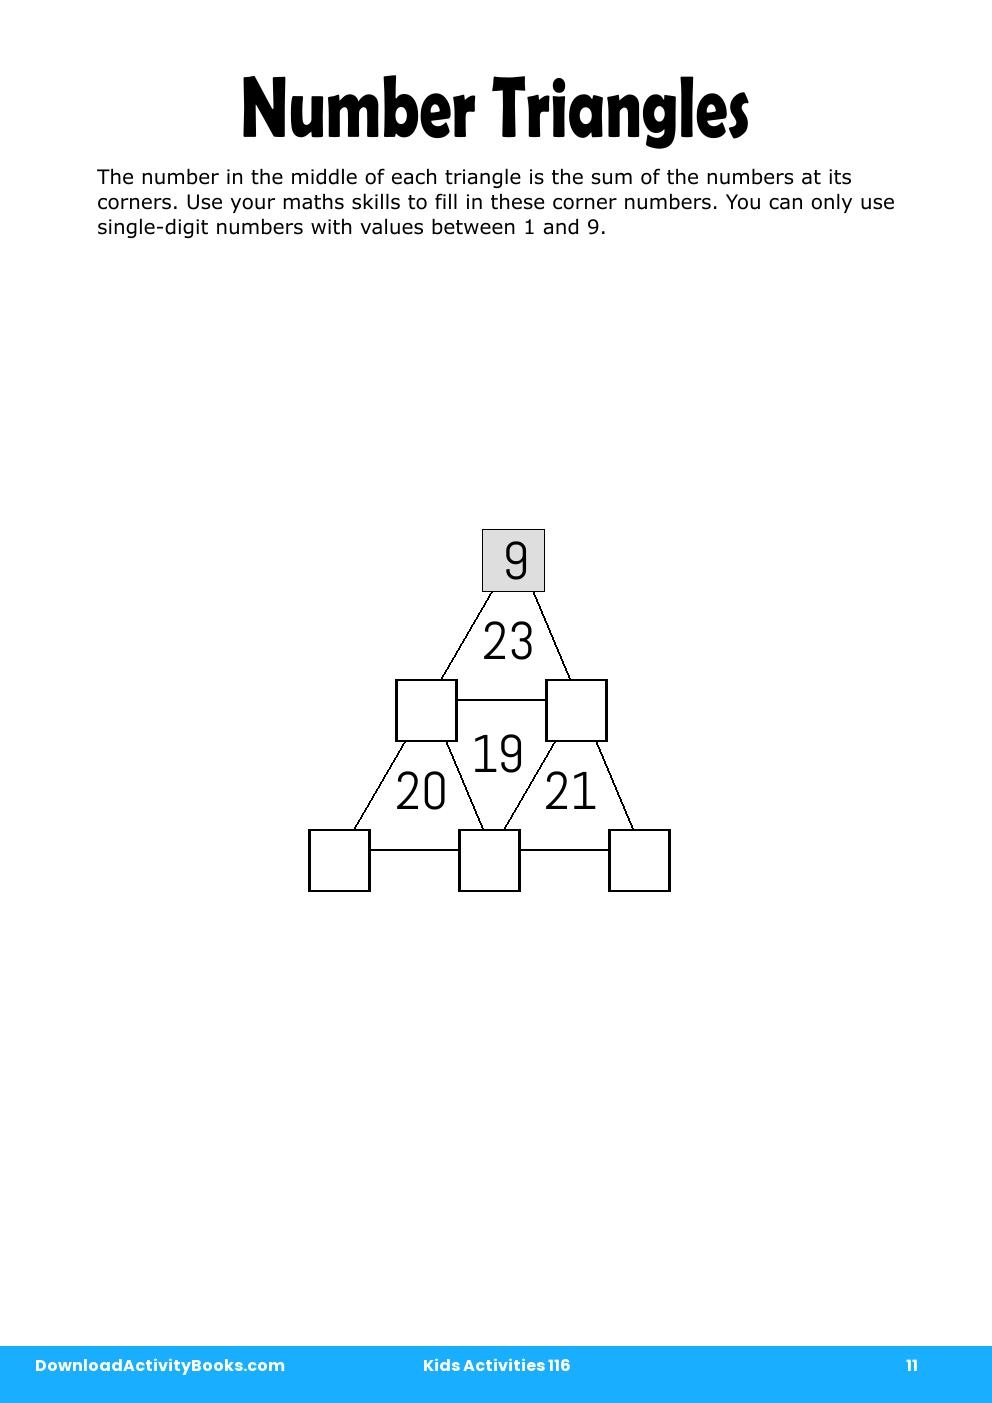 Number Triangles in Kids Activities 116